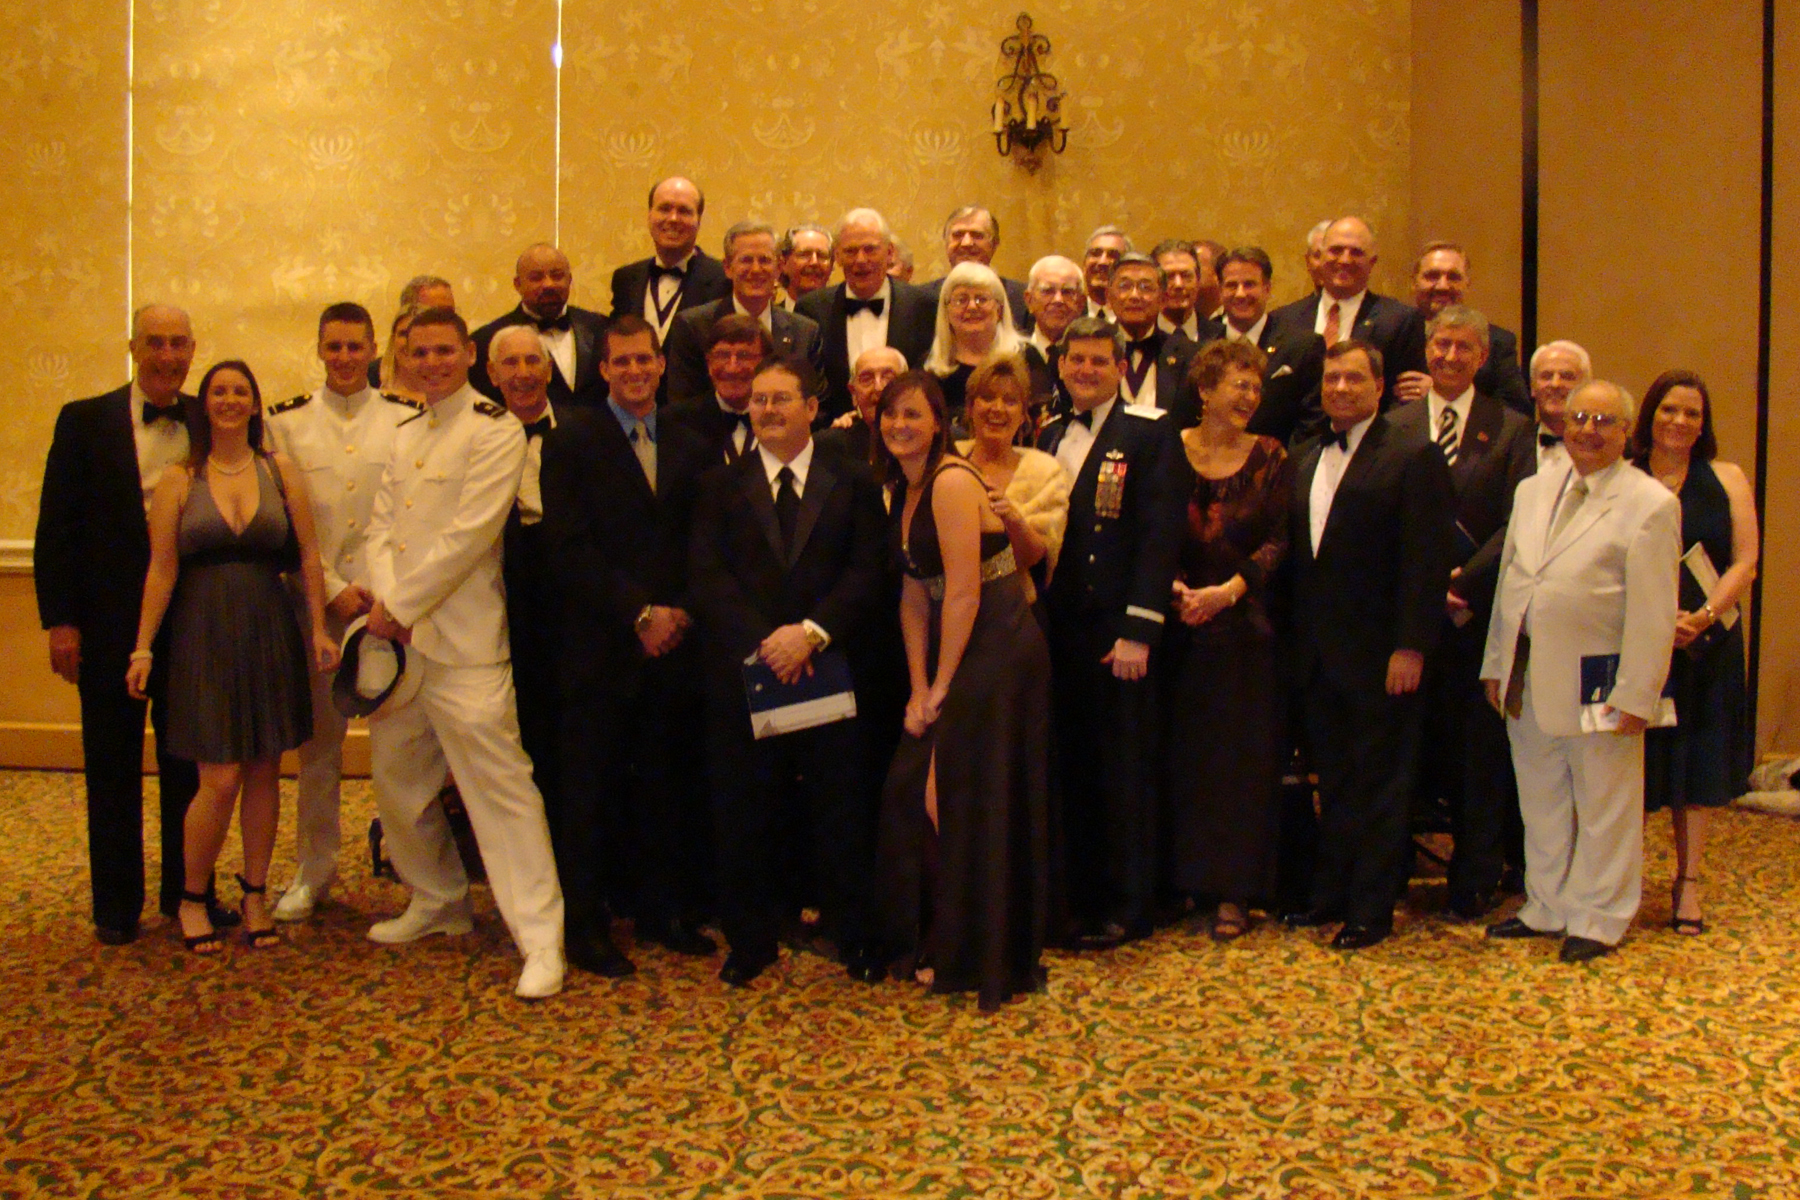 Tony Jannus Award Recipients, Board Members & Scholar Award Winners - 1, 30 Oct '08.jpg